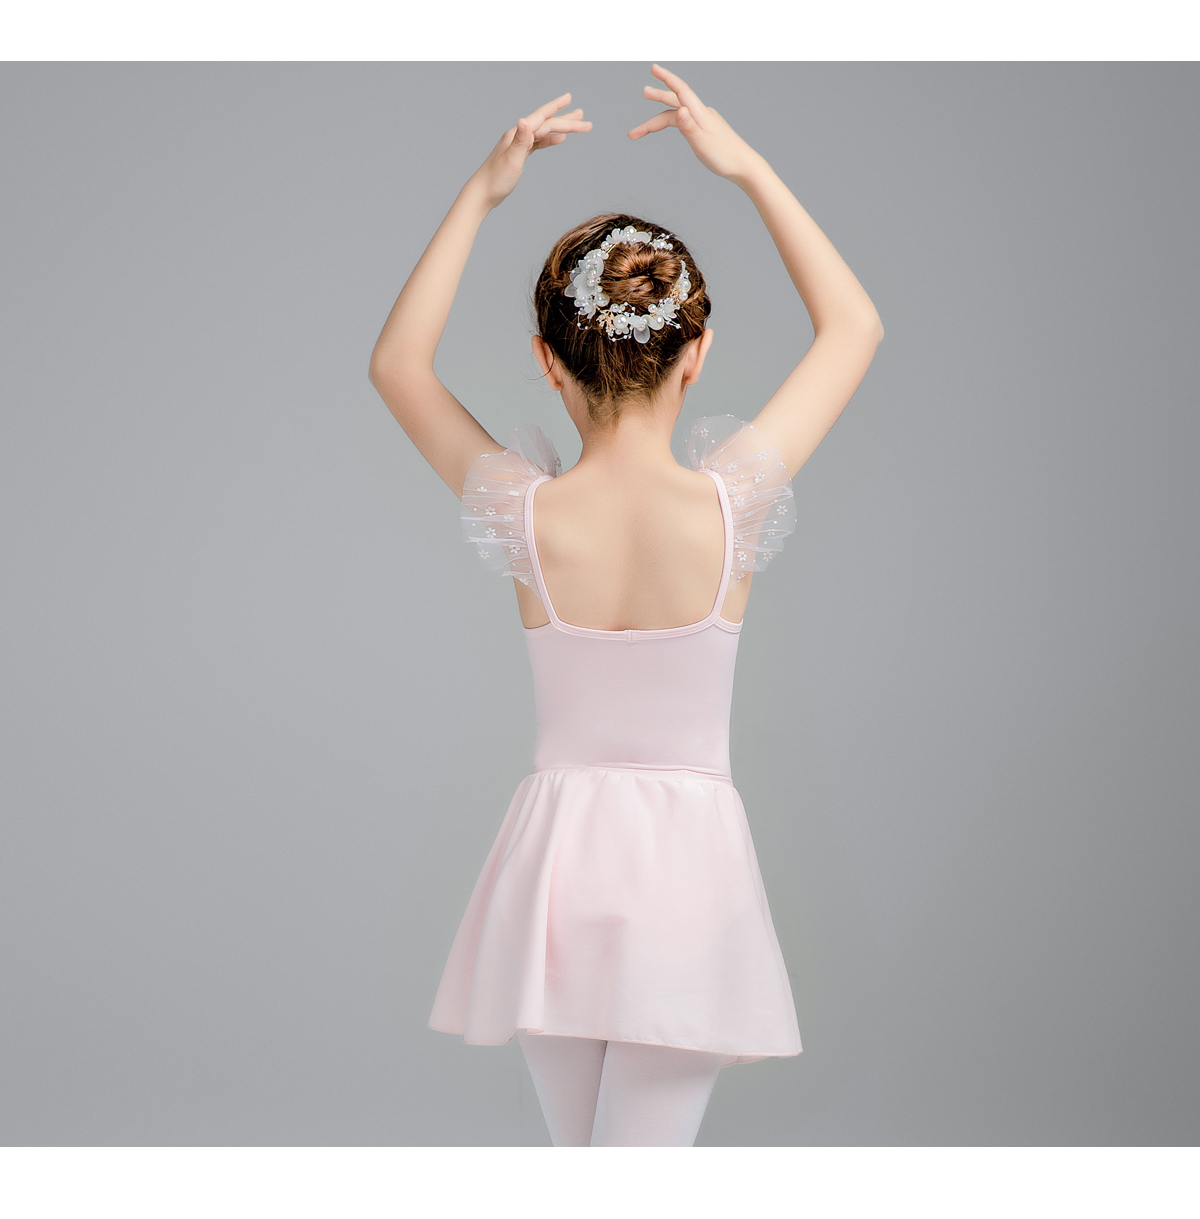 吊带练功服女童夏季芭蕾舞服装0302225